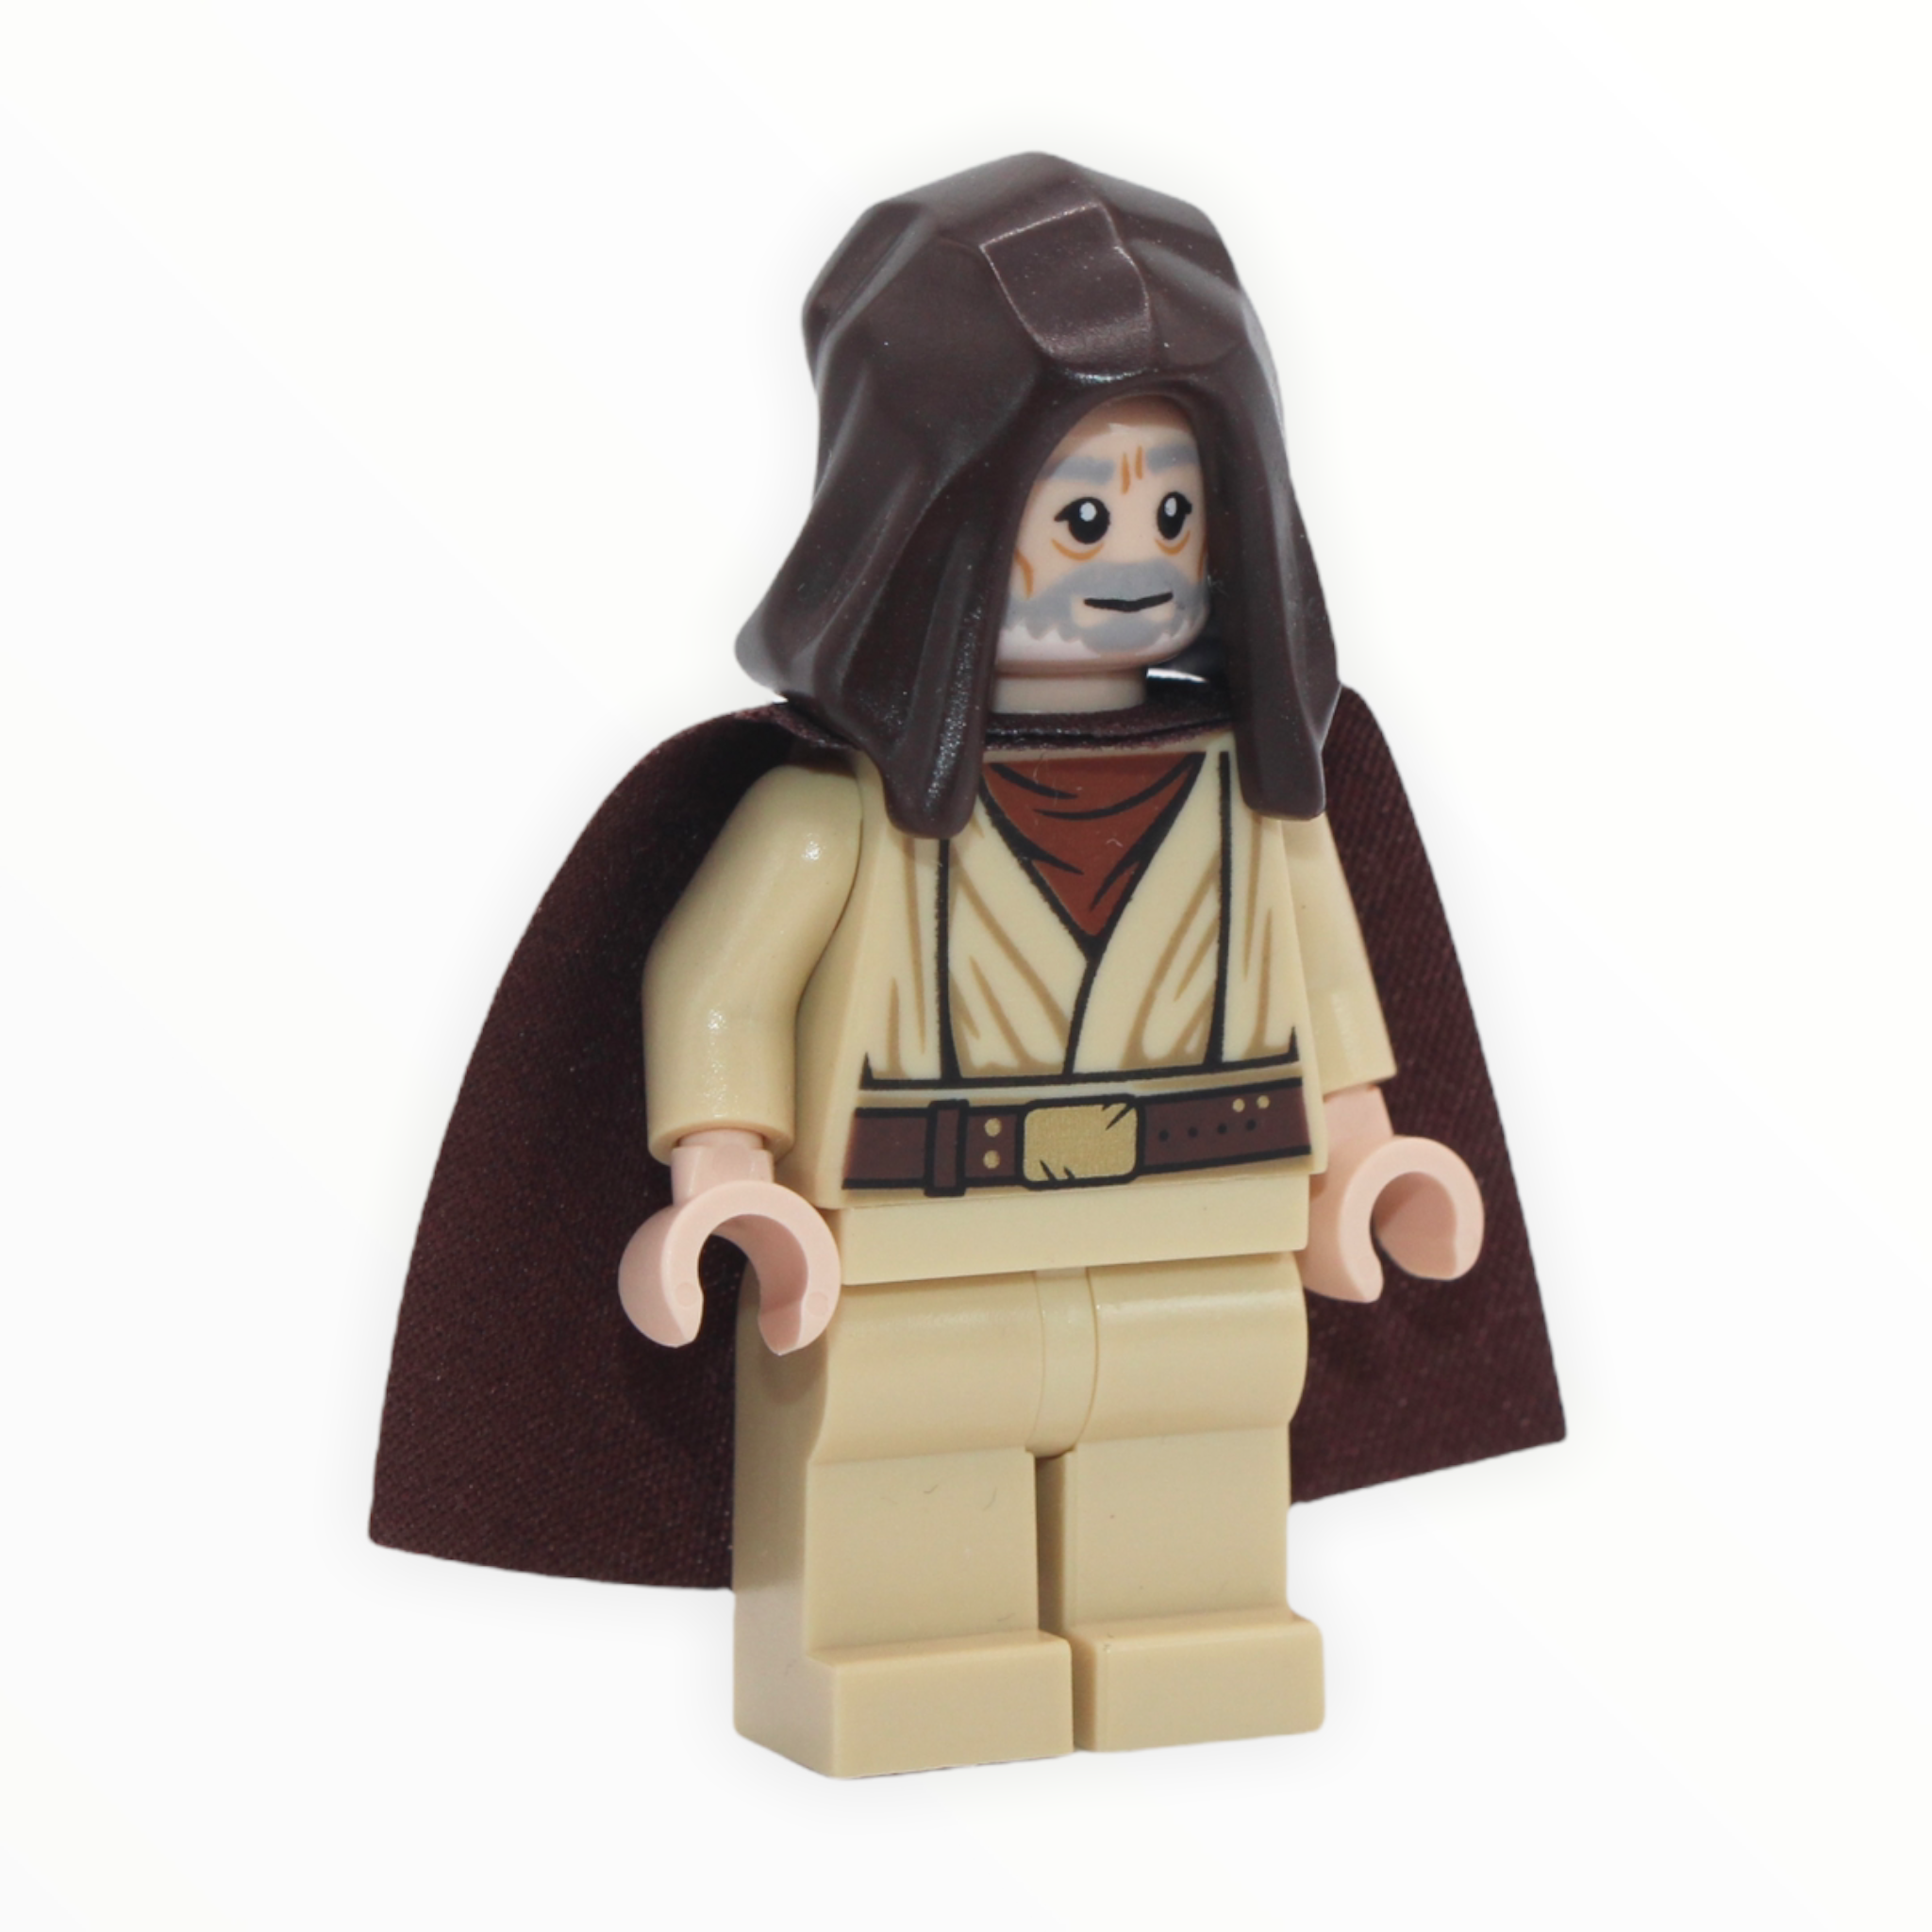 Ben Kenobi (dark brown cape and hood, 2019)